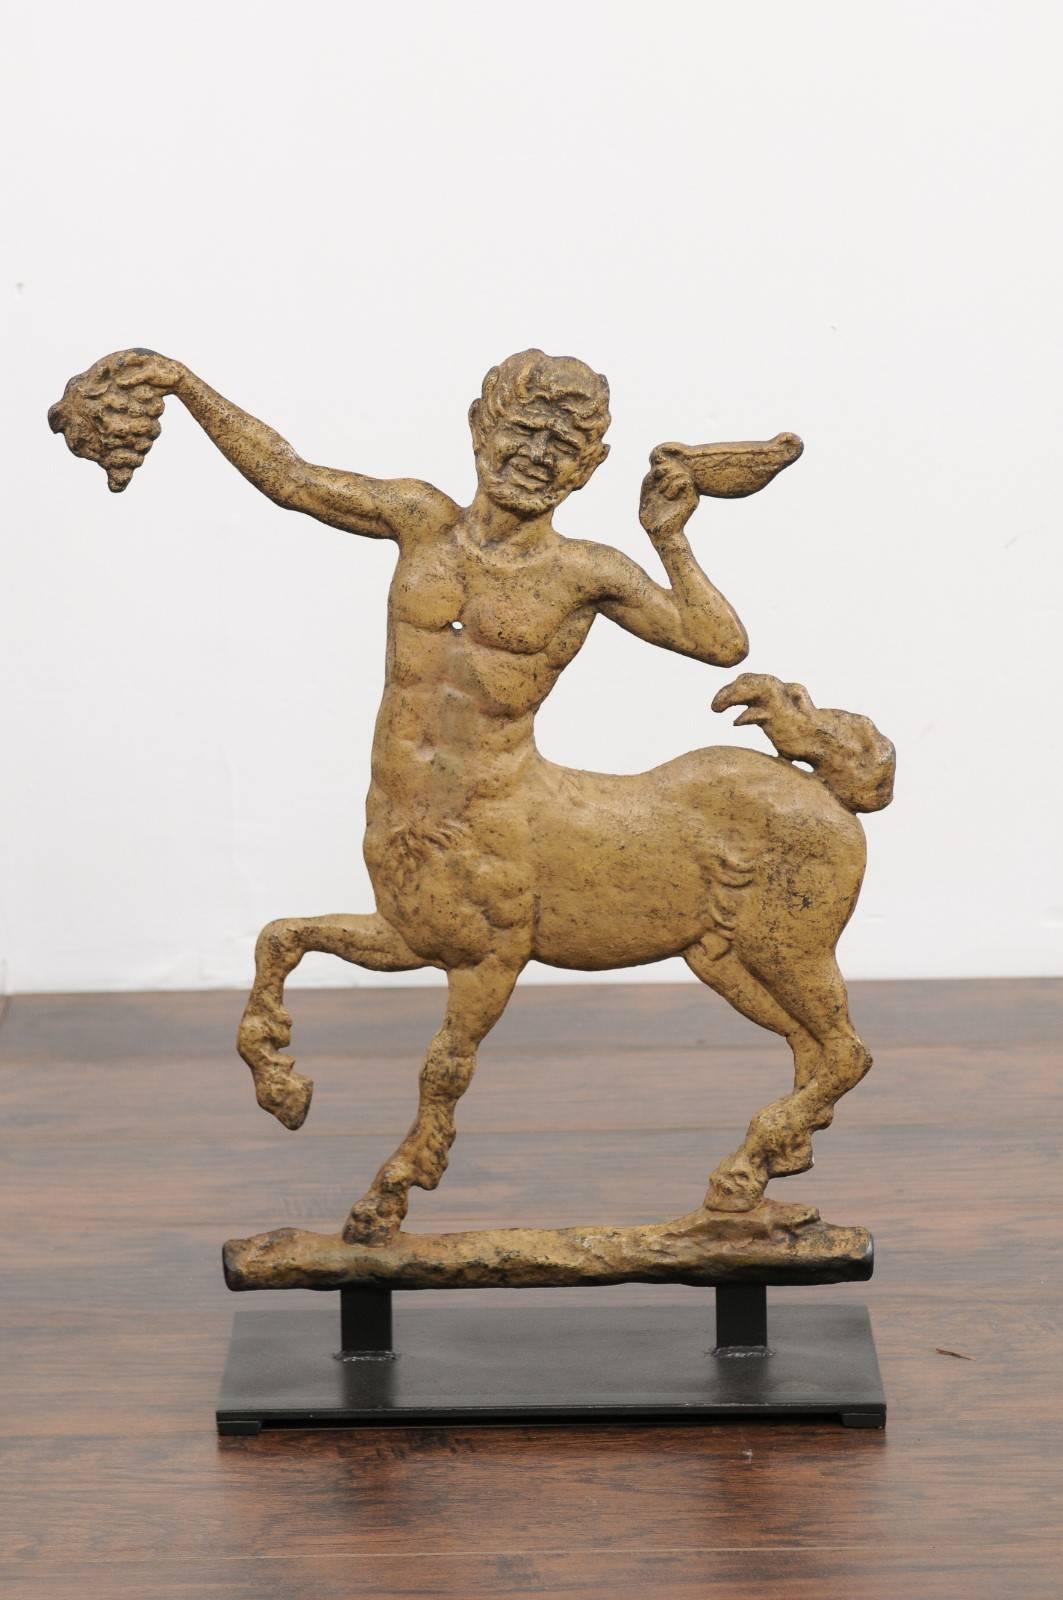 Eine französische Kentaurenskulptur aus bemaltem Eisen aus dem frühen 20. Jahrhundert, montiert auf einem speziell angefertigten Sockel. Dieses französische Dekorationsobjekt zeigt ein der griechisch-römischen Mythologie entlehntes Motiv: einen